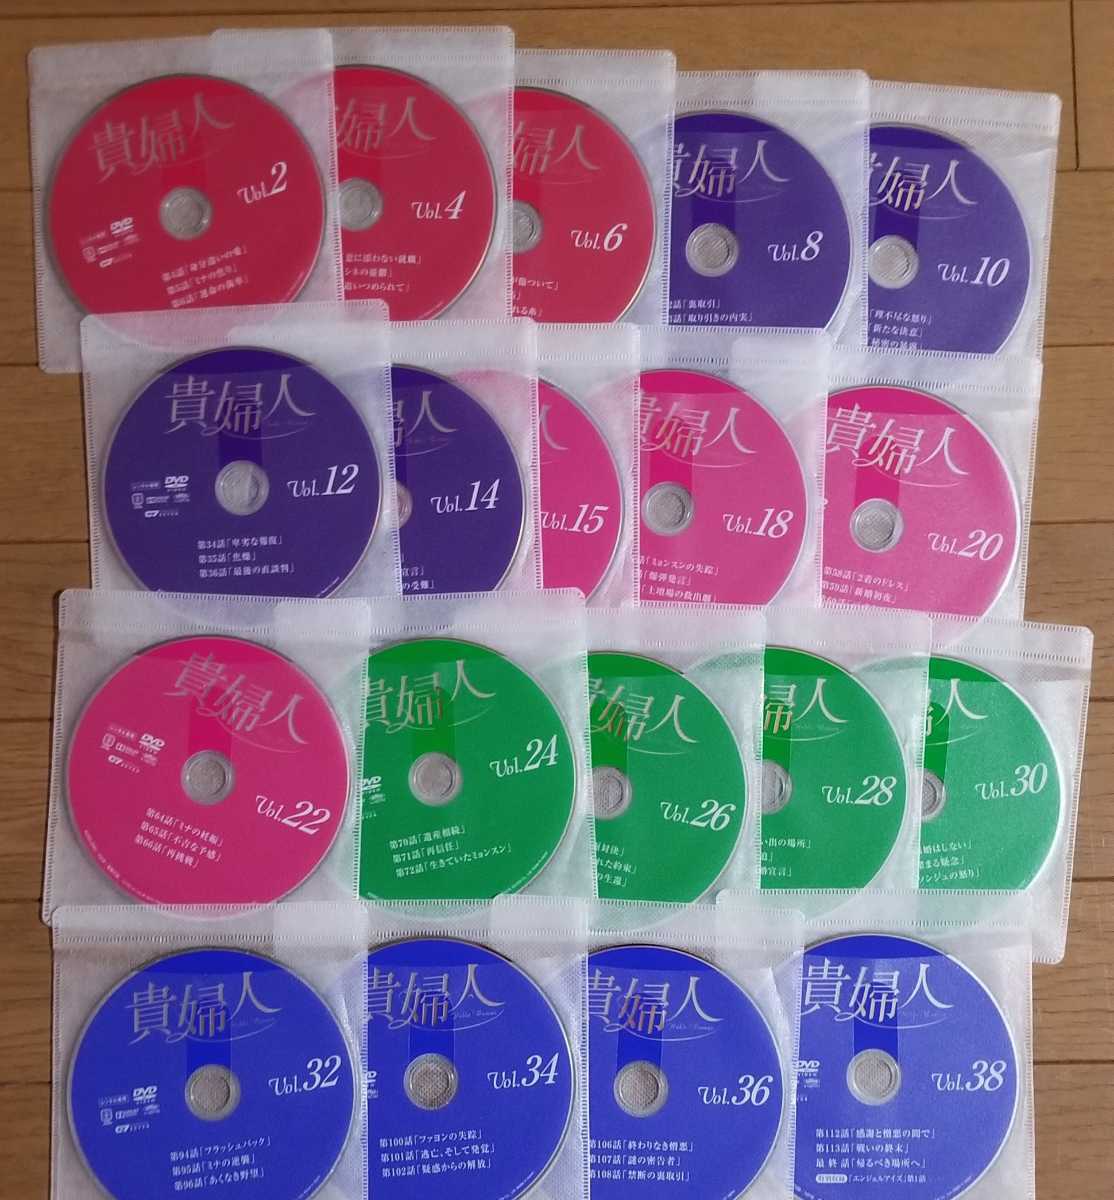 韓国ドラマ 貴婦人 全話 レンタル版dvd ディスクのみ 海外 売買されたオークション情報 Yahooの商品情報をアーカイブ公開 オークファン Aucfan Com